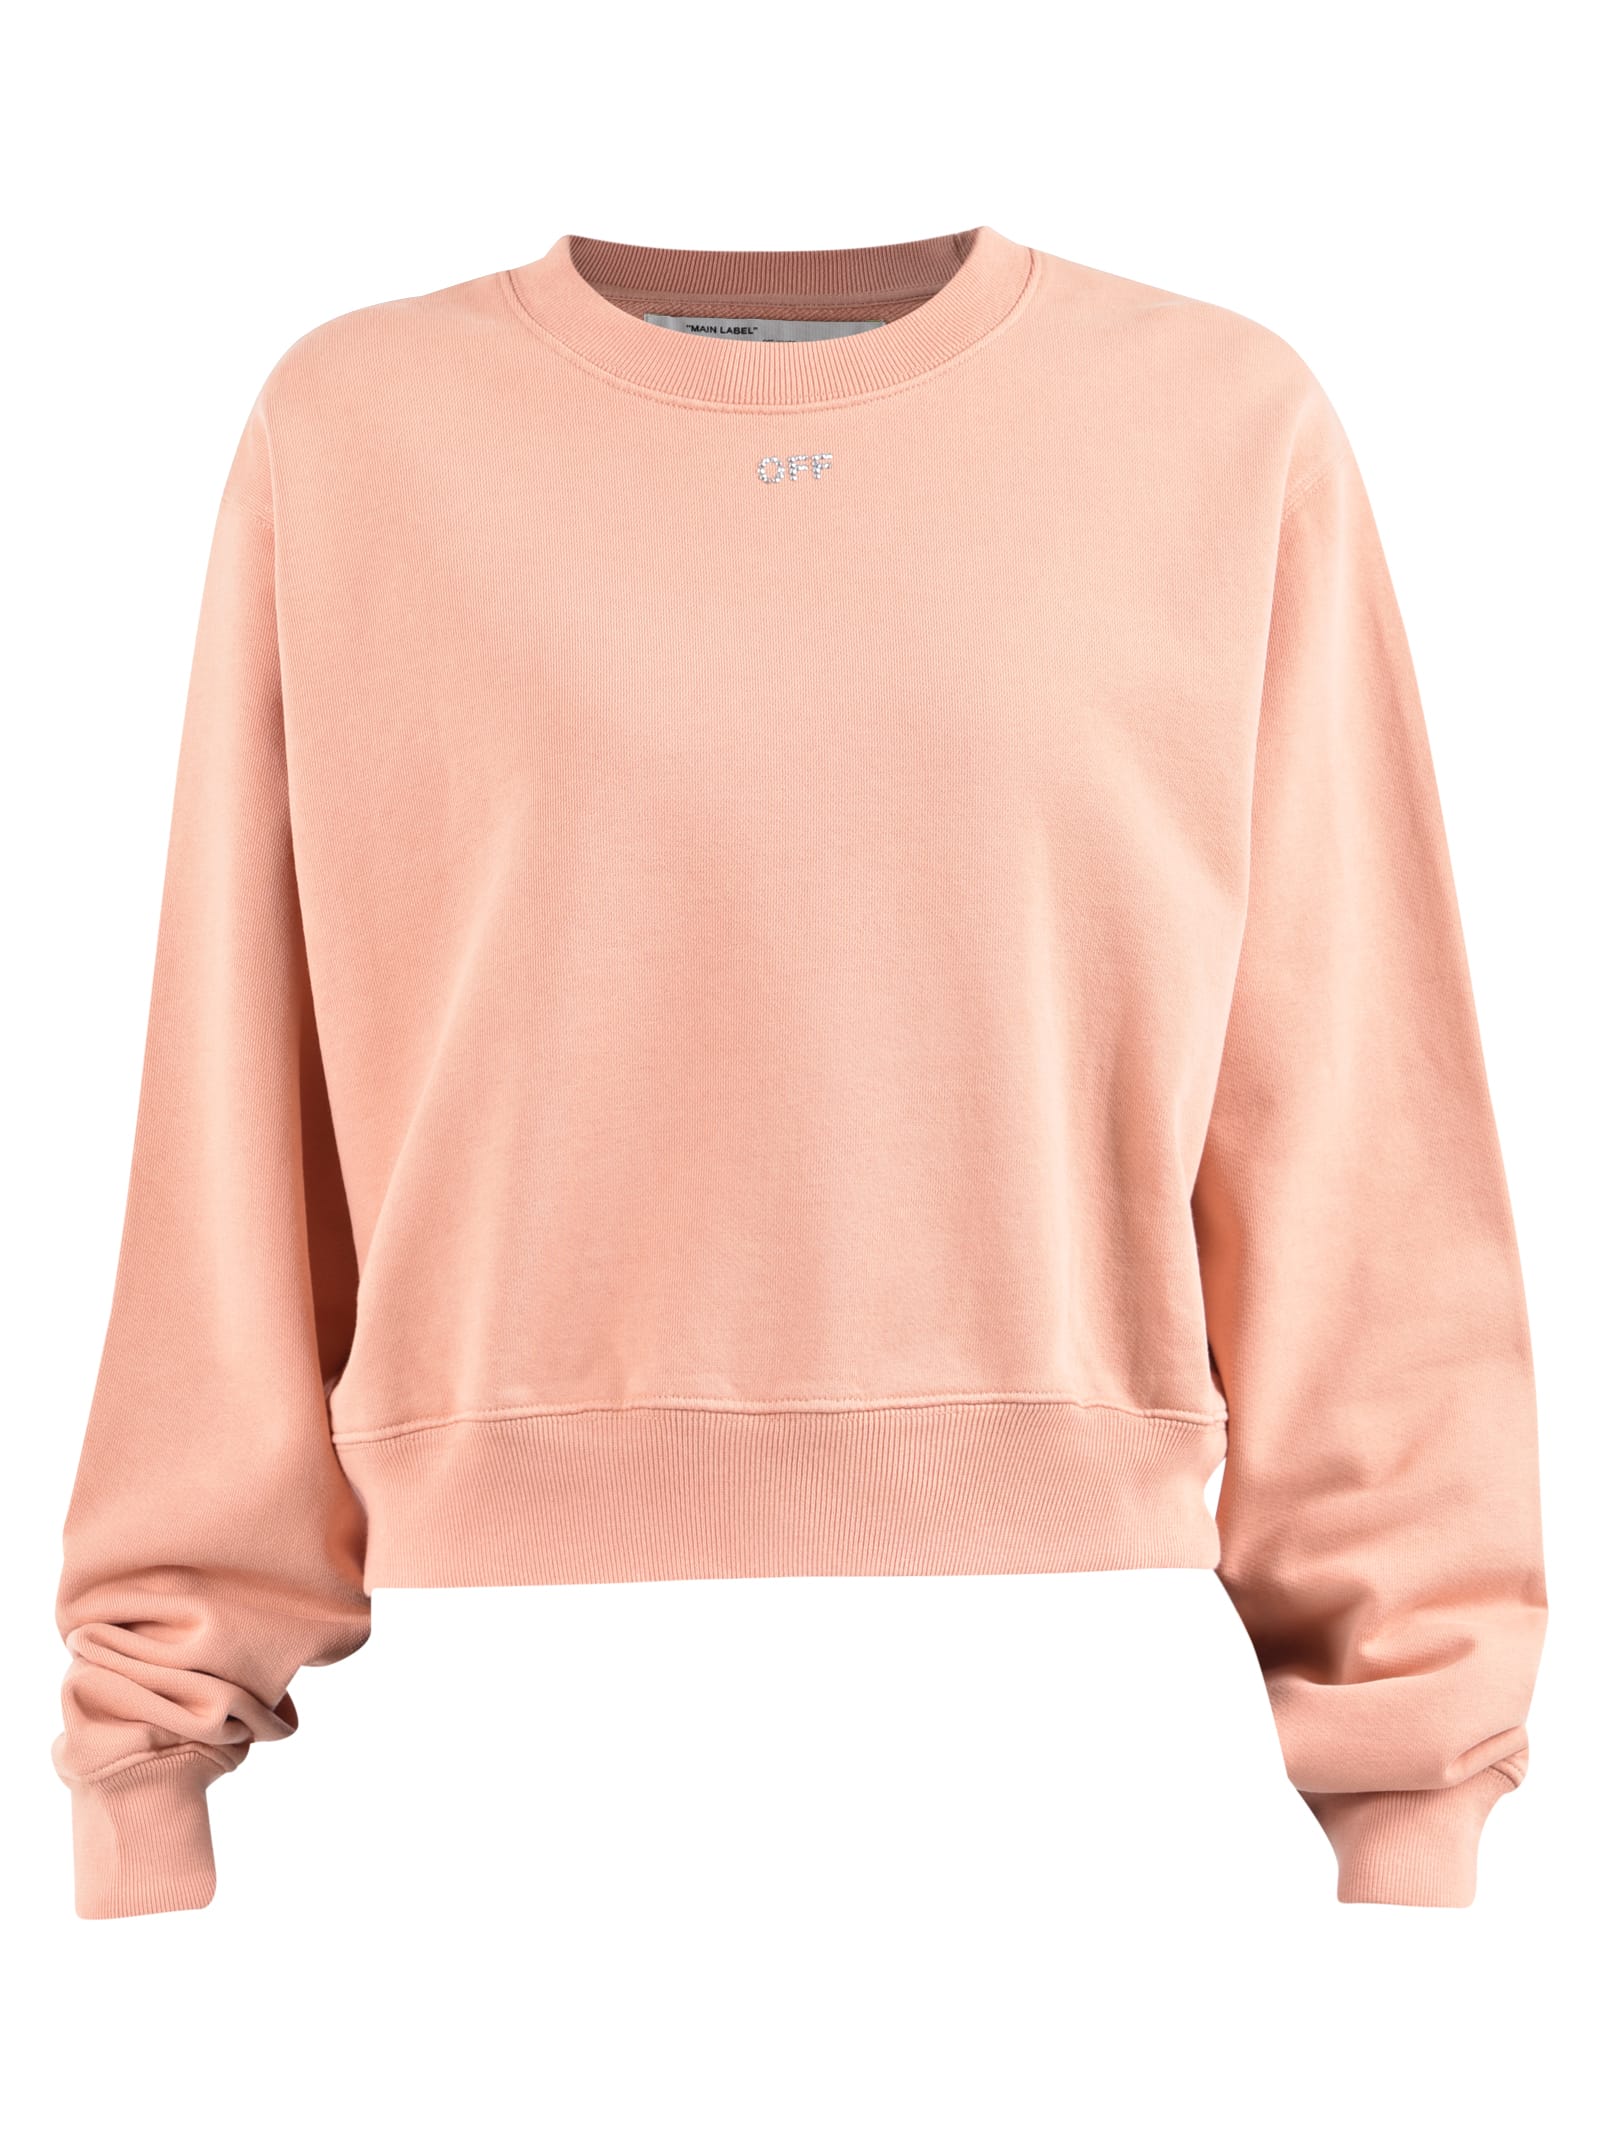 off white pink sweatshirt